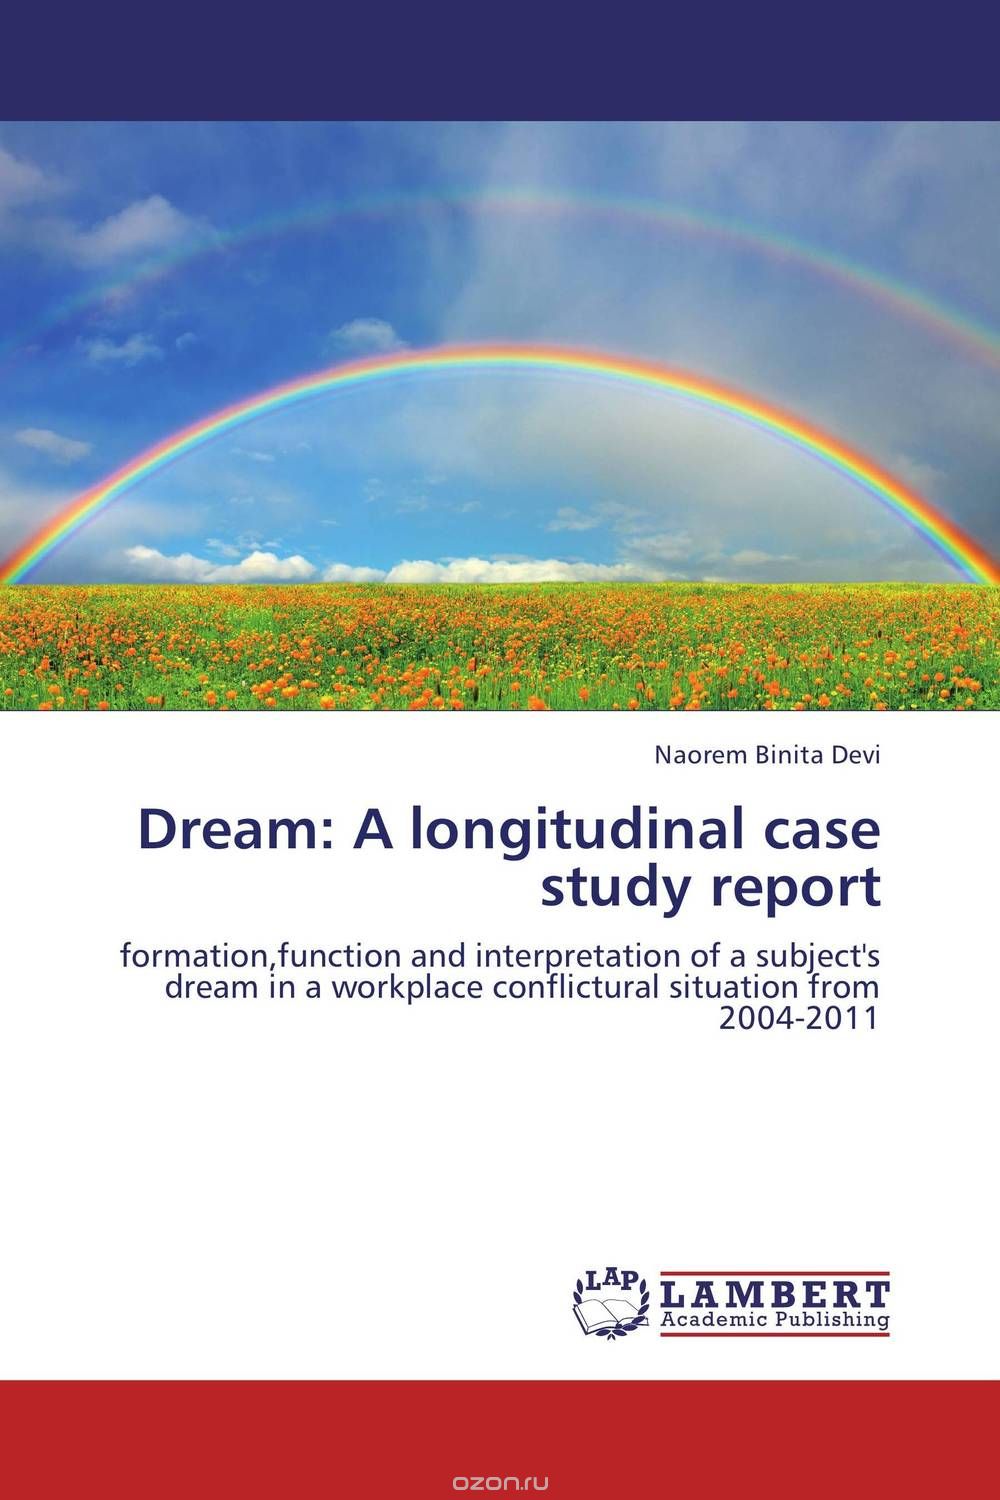 Скачать книгу "Dream: A longitudinal case study report"